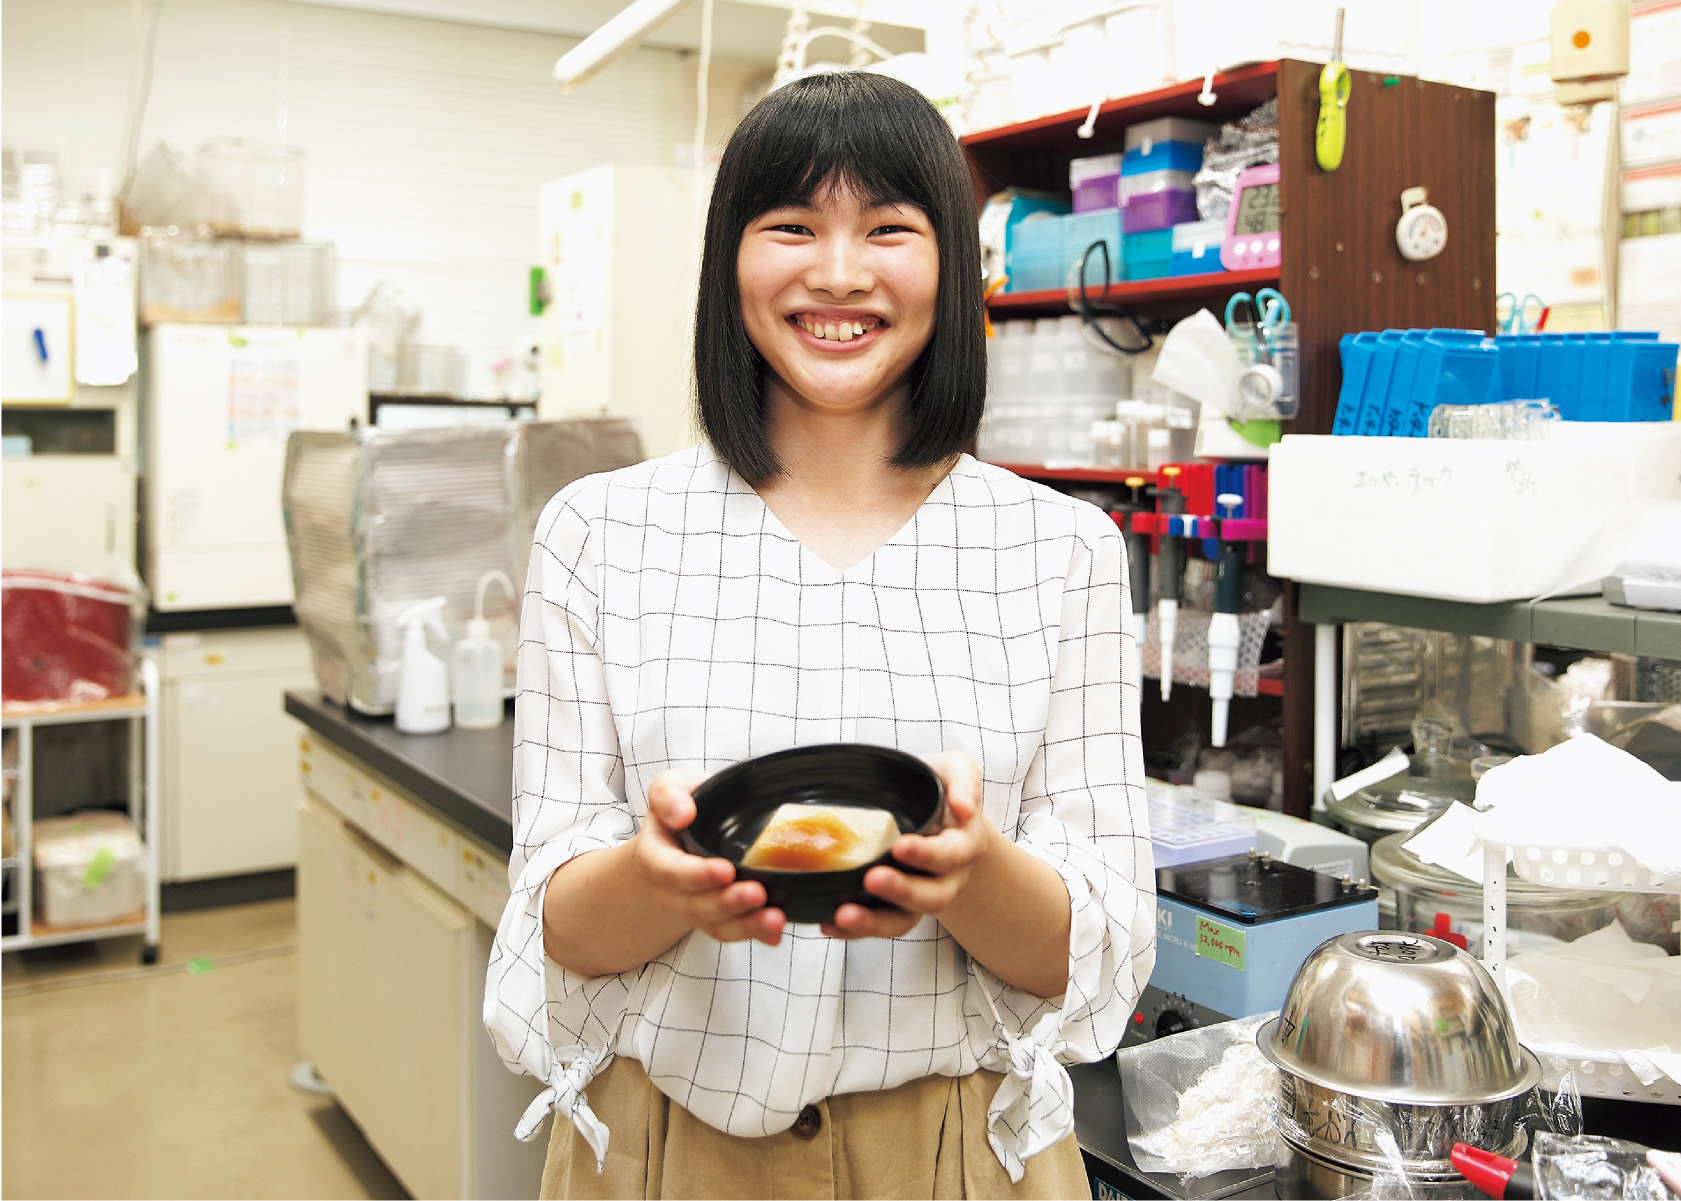 玄米豆腐を考案、編入生が学部生で論文出版の快挙。